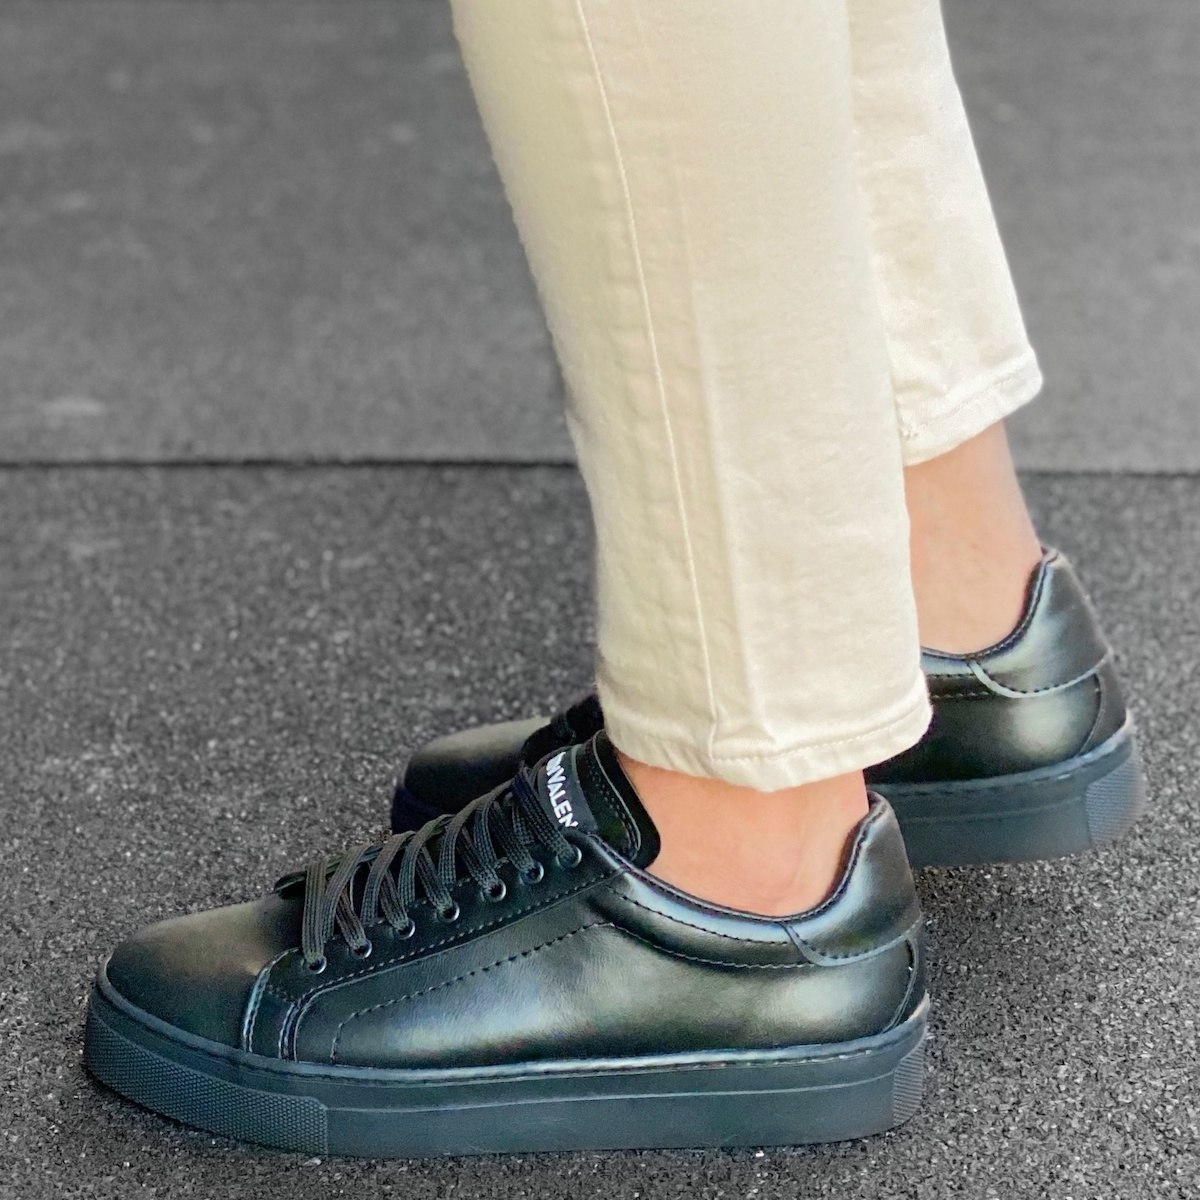 Herren Low Top Casual Sneakers Schuhe in schwarz - 3